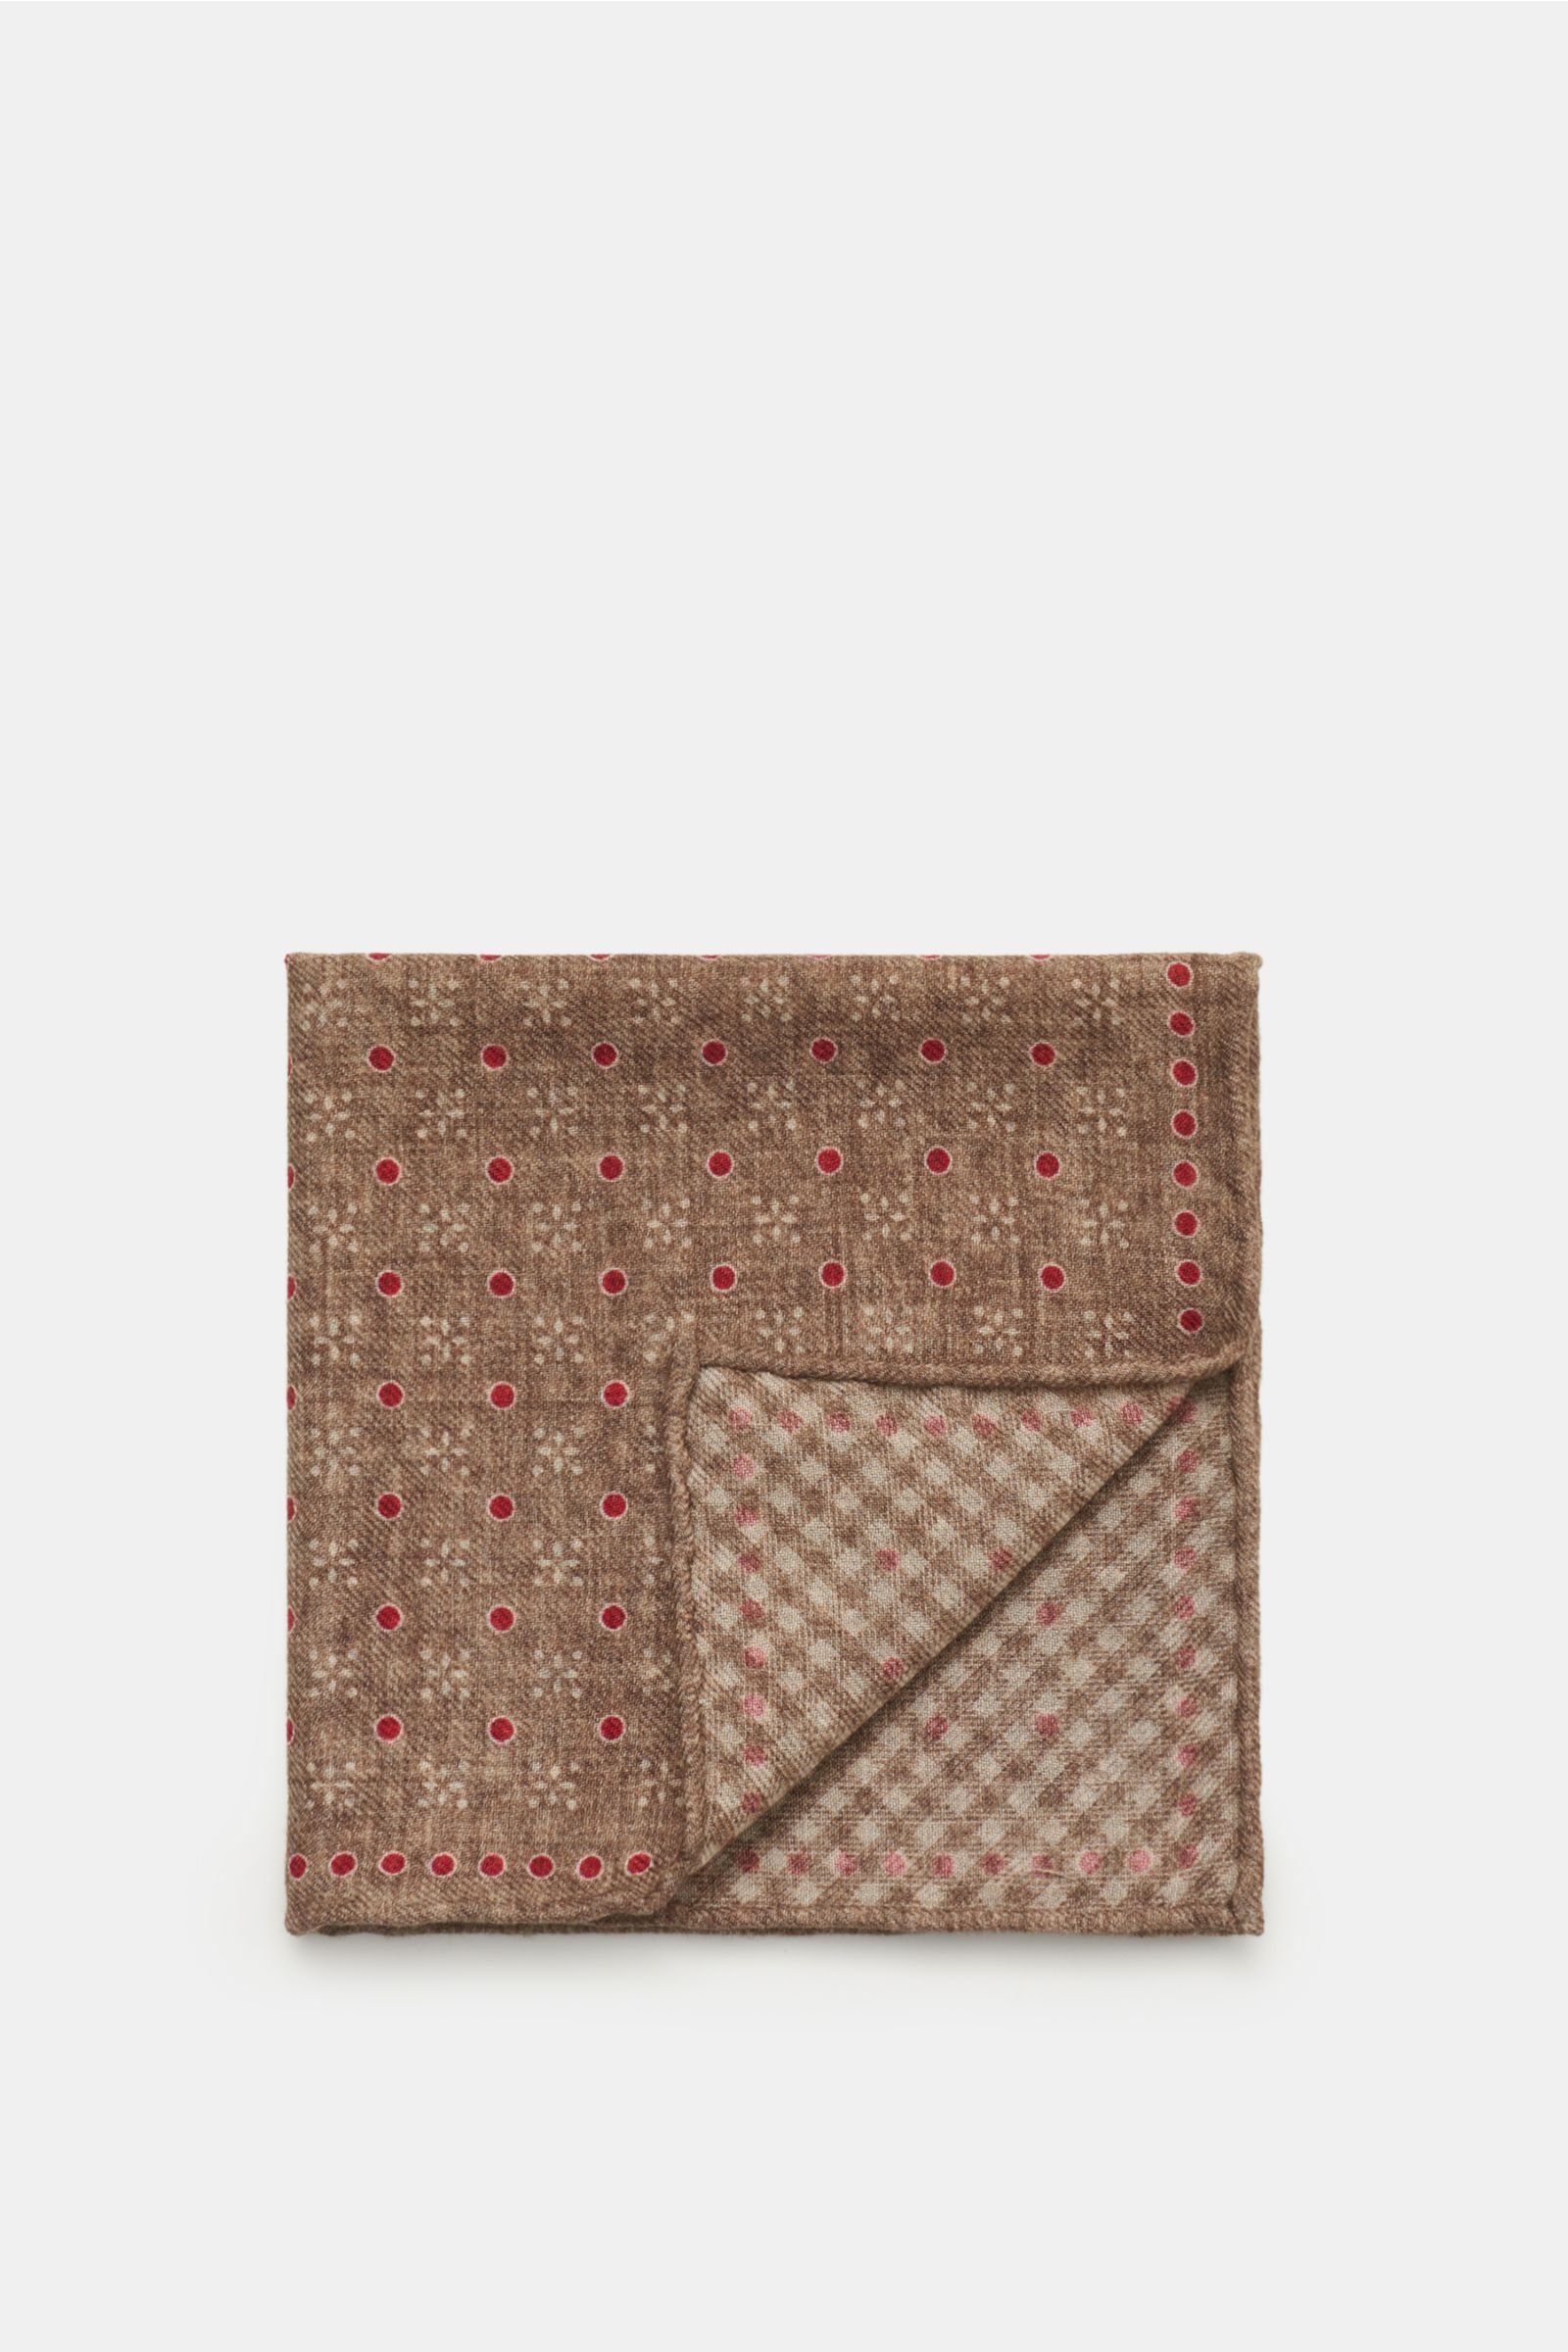 Pocket square grey-brown/burgundy patterned